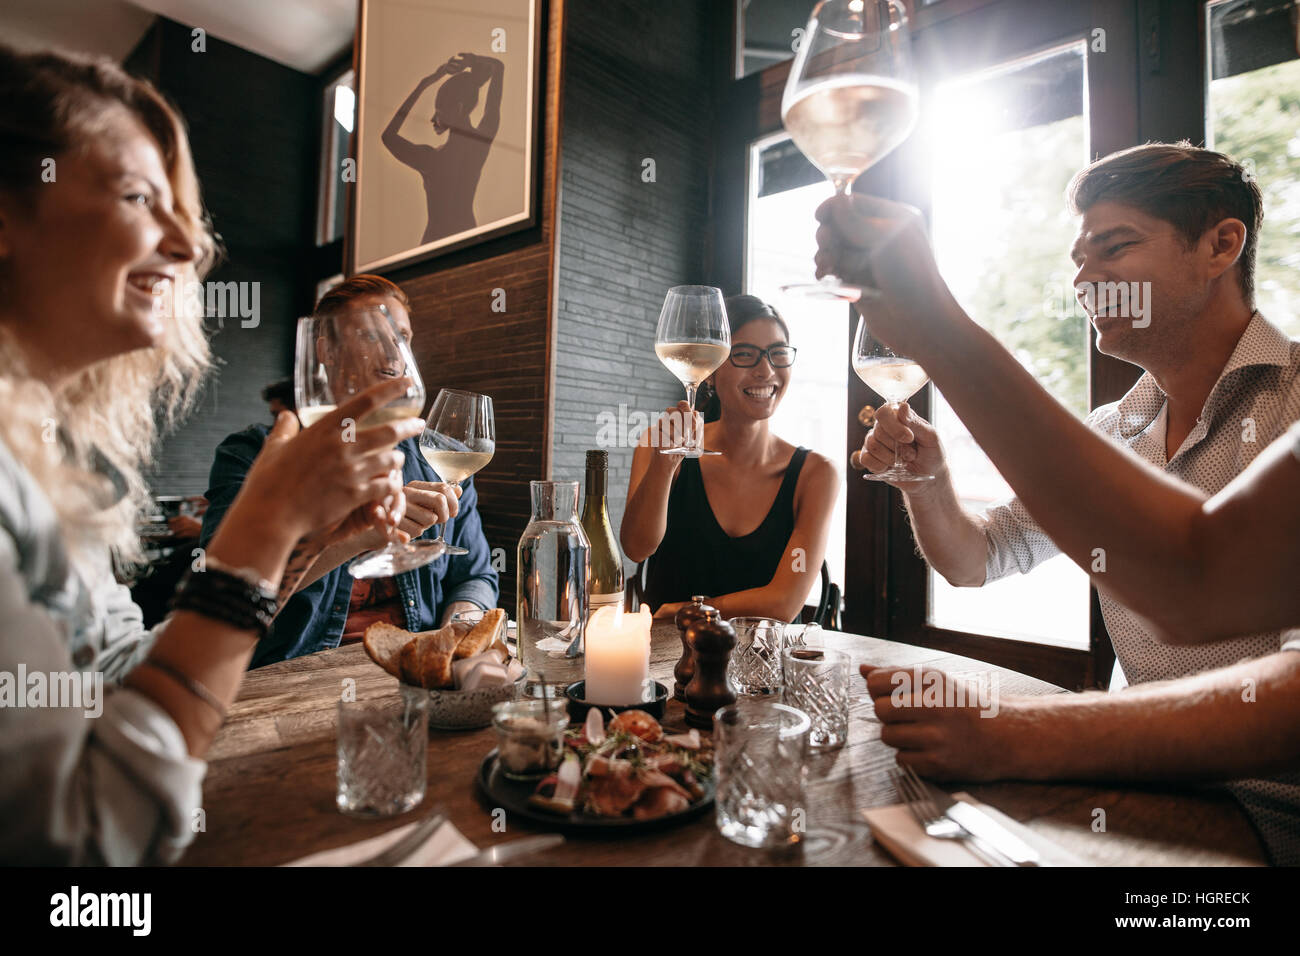 Un grupo de amigos, hacer un brindis en el restaurante. Los jóvenes amigos sentado en una mesa, brindando con vino y disfrutar de una comida juntos. Foto de stock